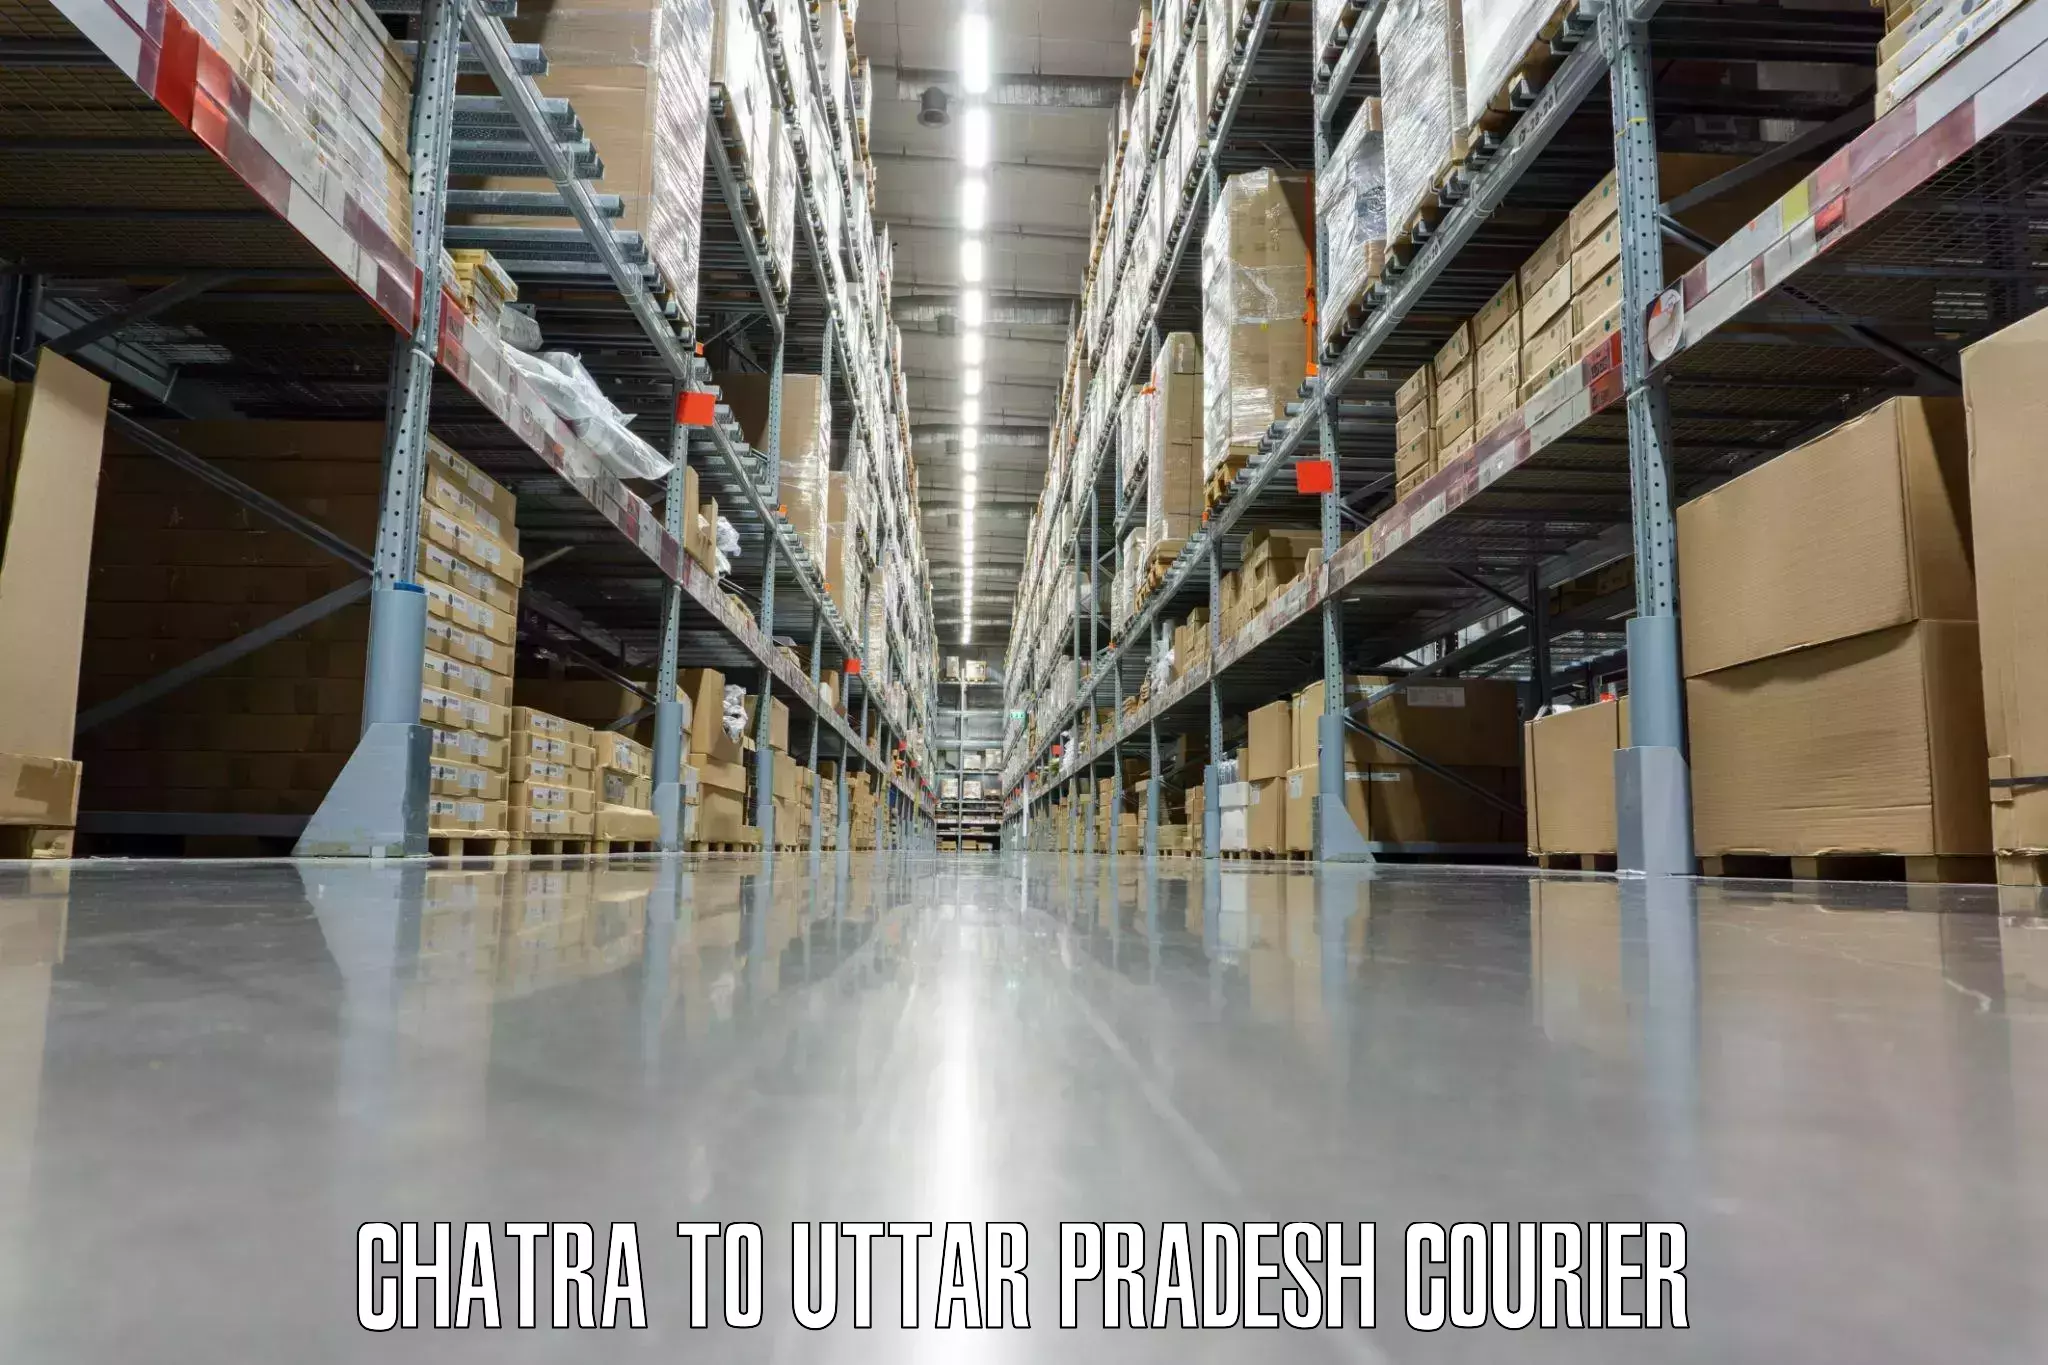 Door-to-door baggage service in Chatra to Uttar Pradesh